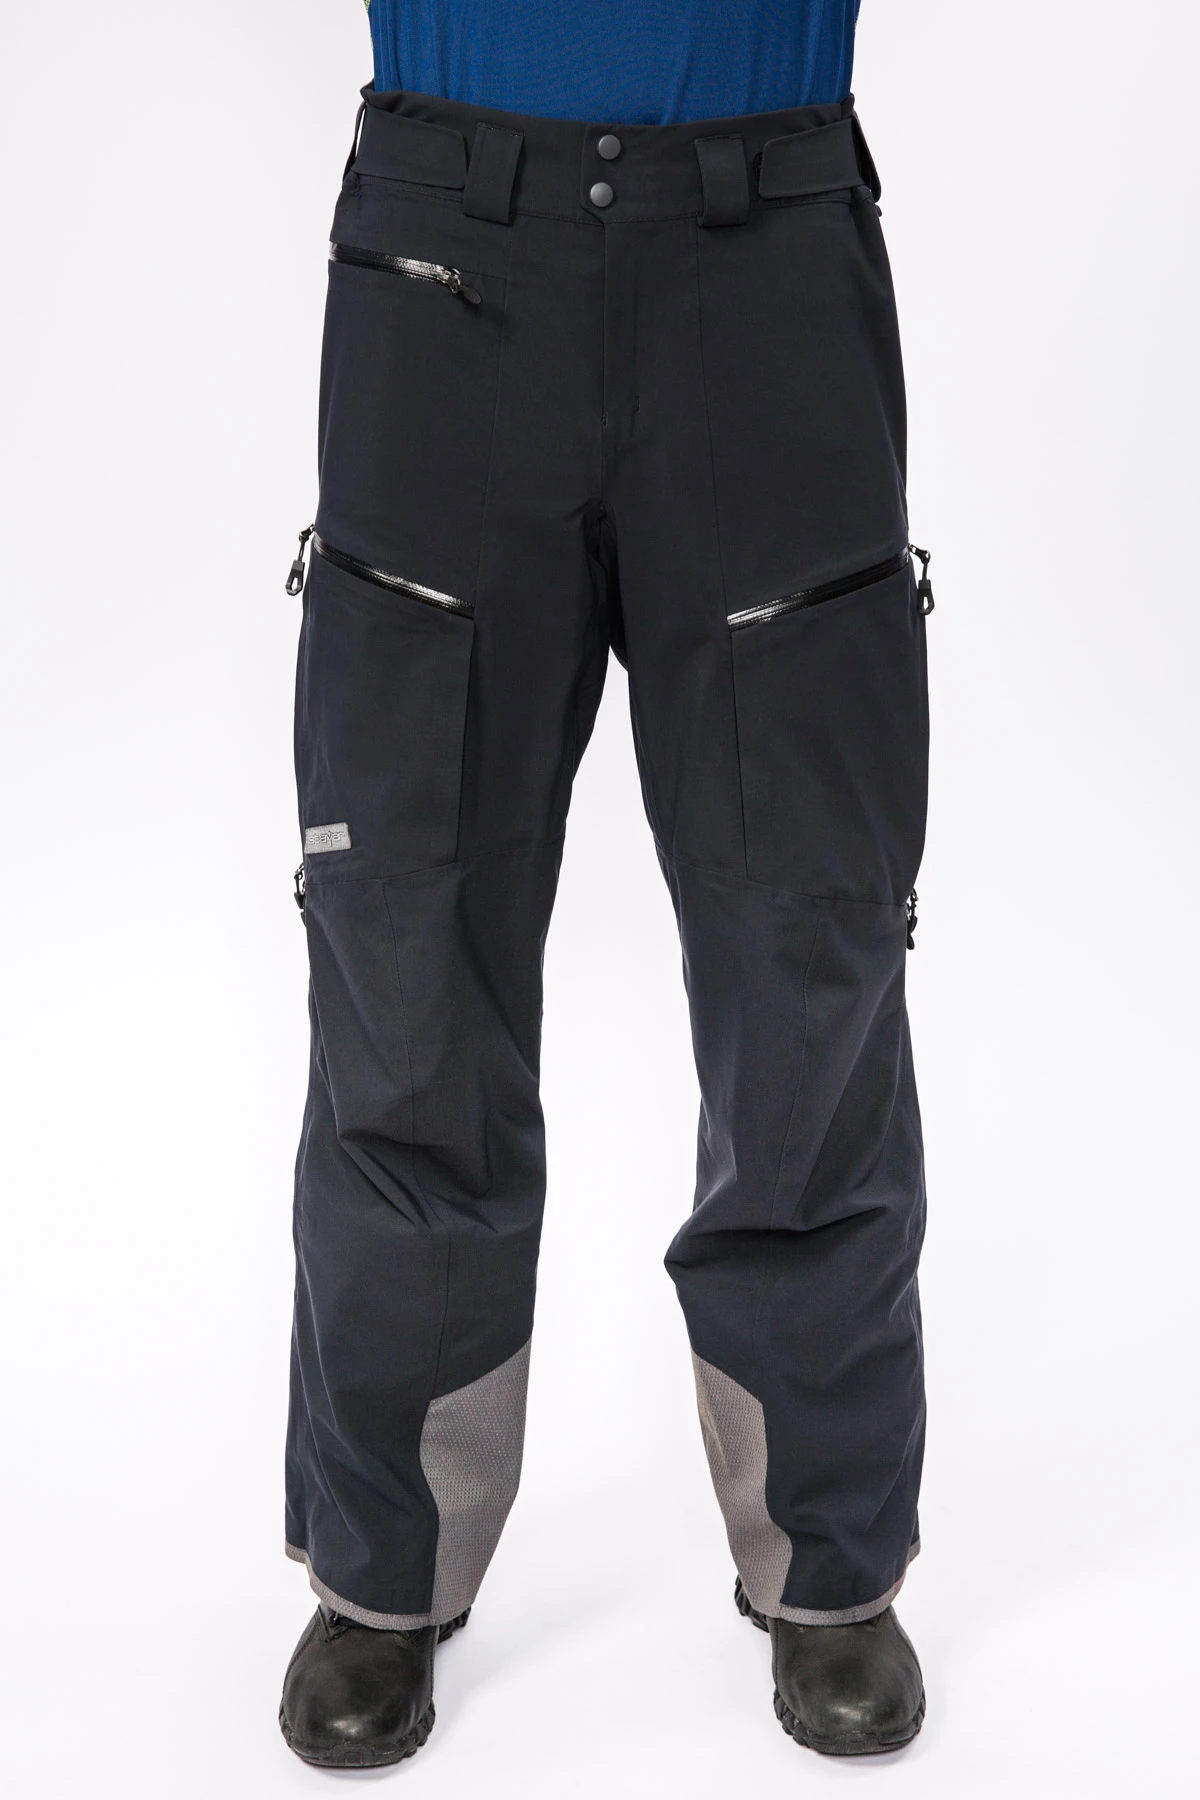 Мембранные брюки Dermizax 3L мужские 17-20915 10 изображение 1